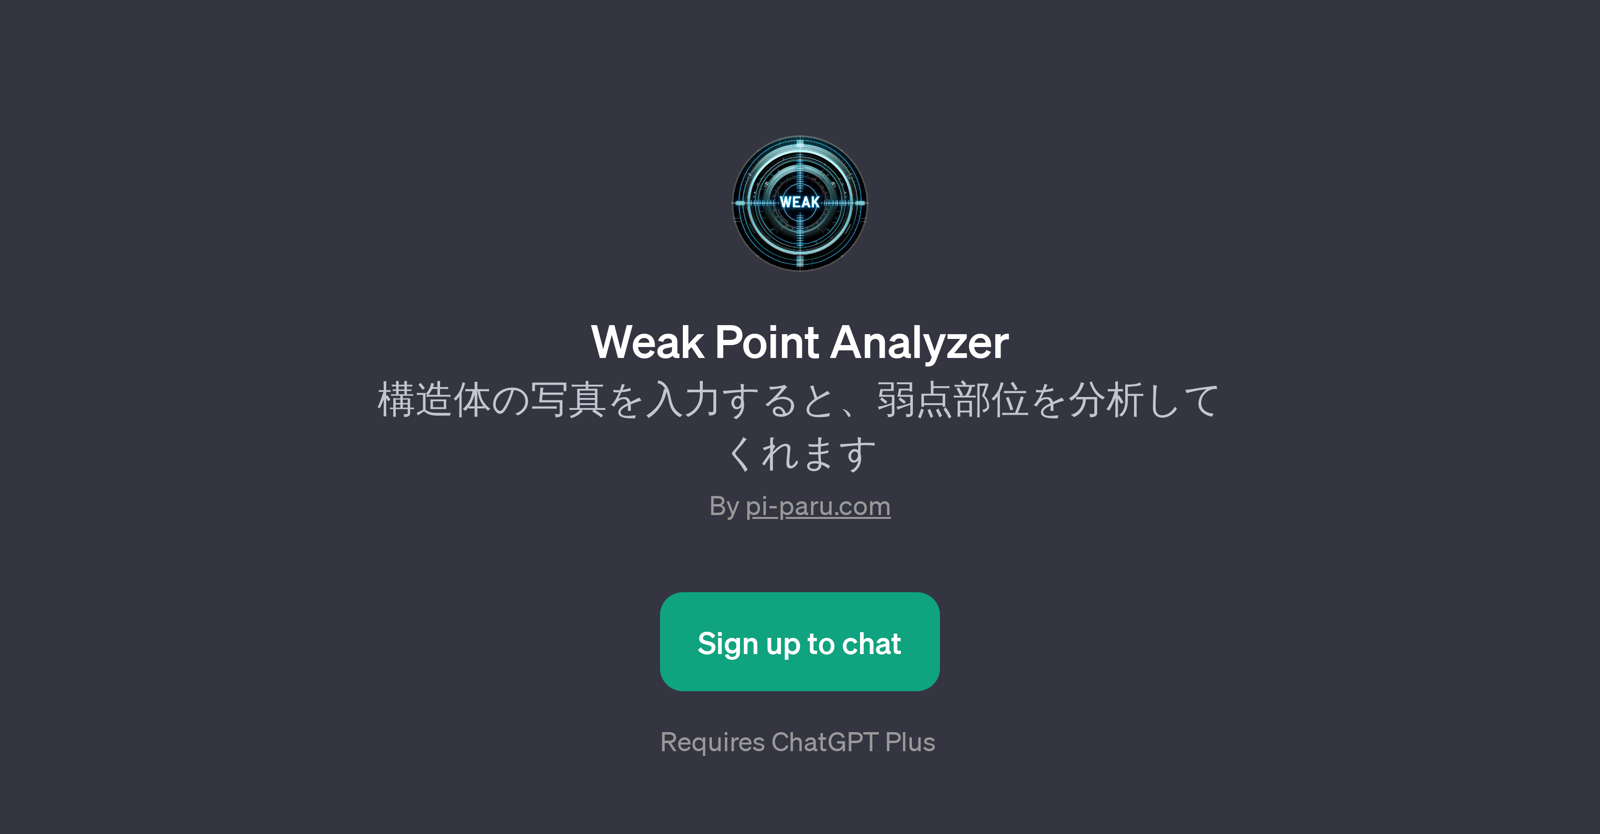 Weak Point Analyzer website